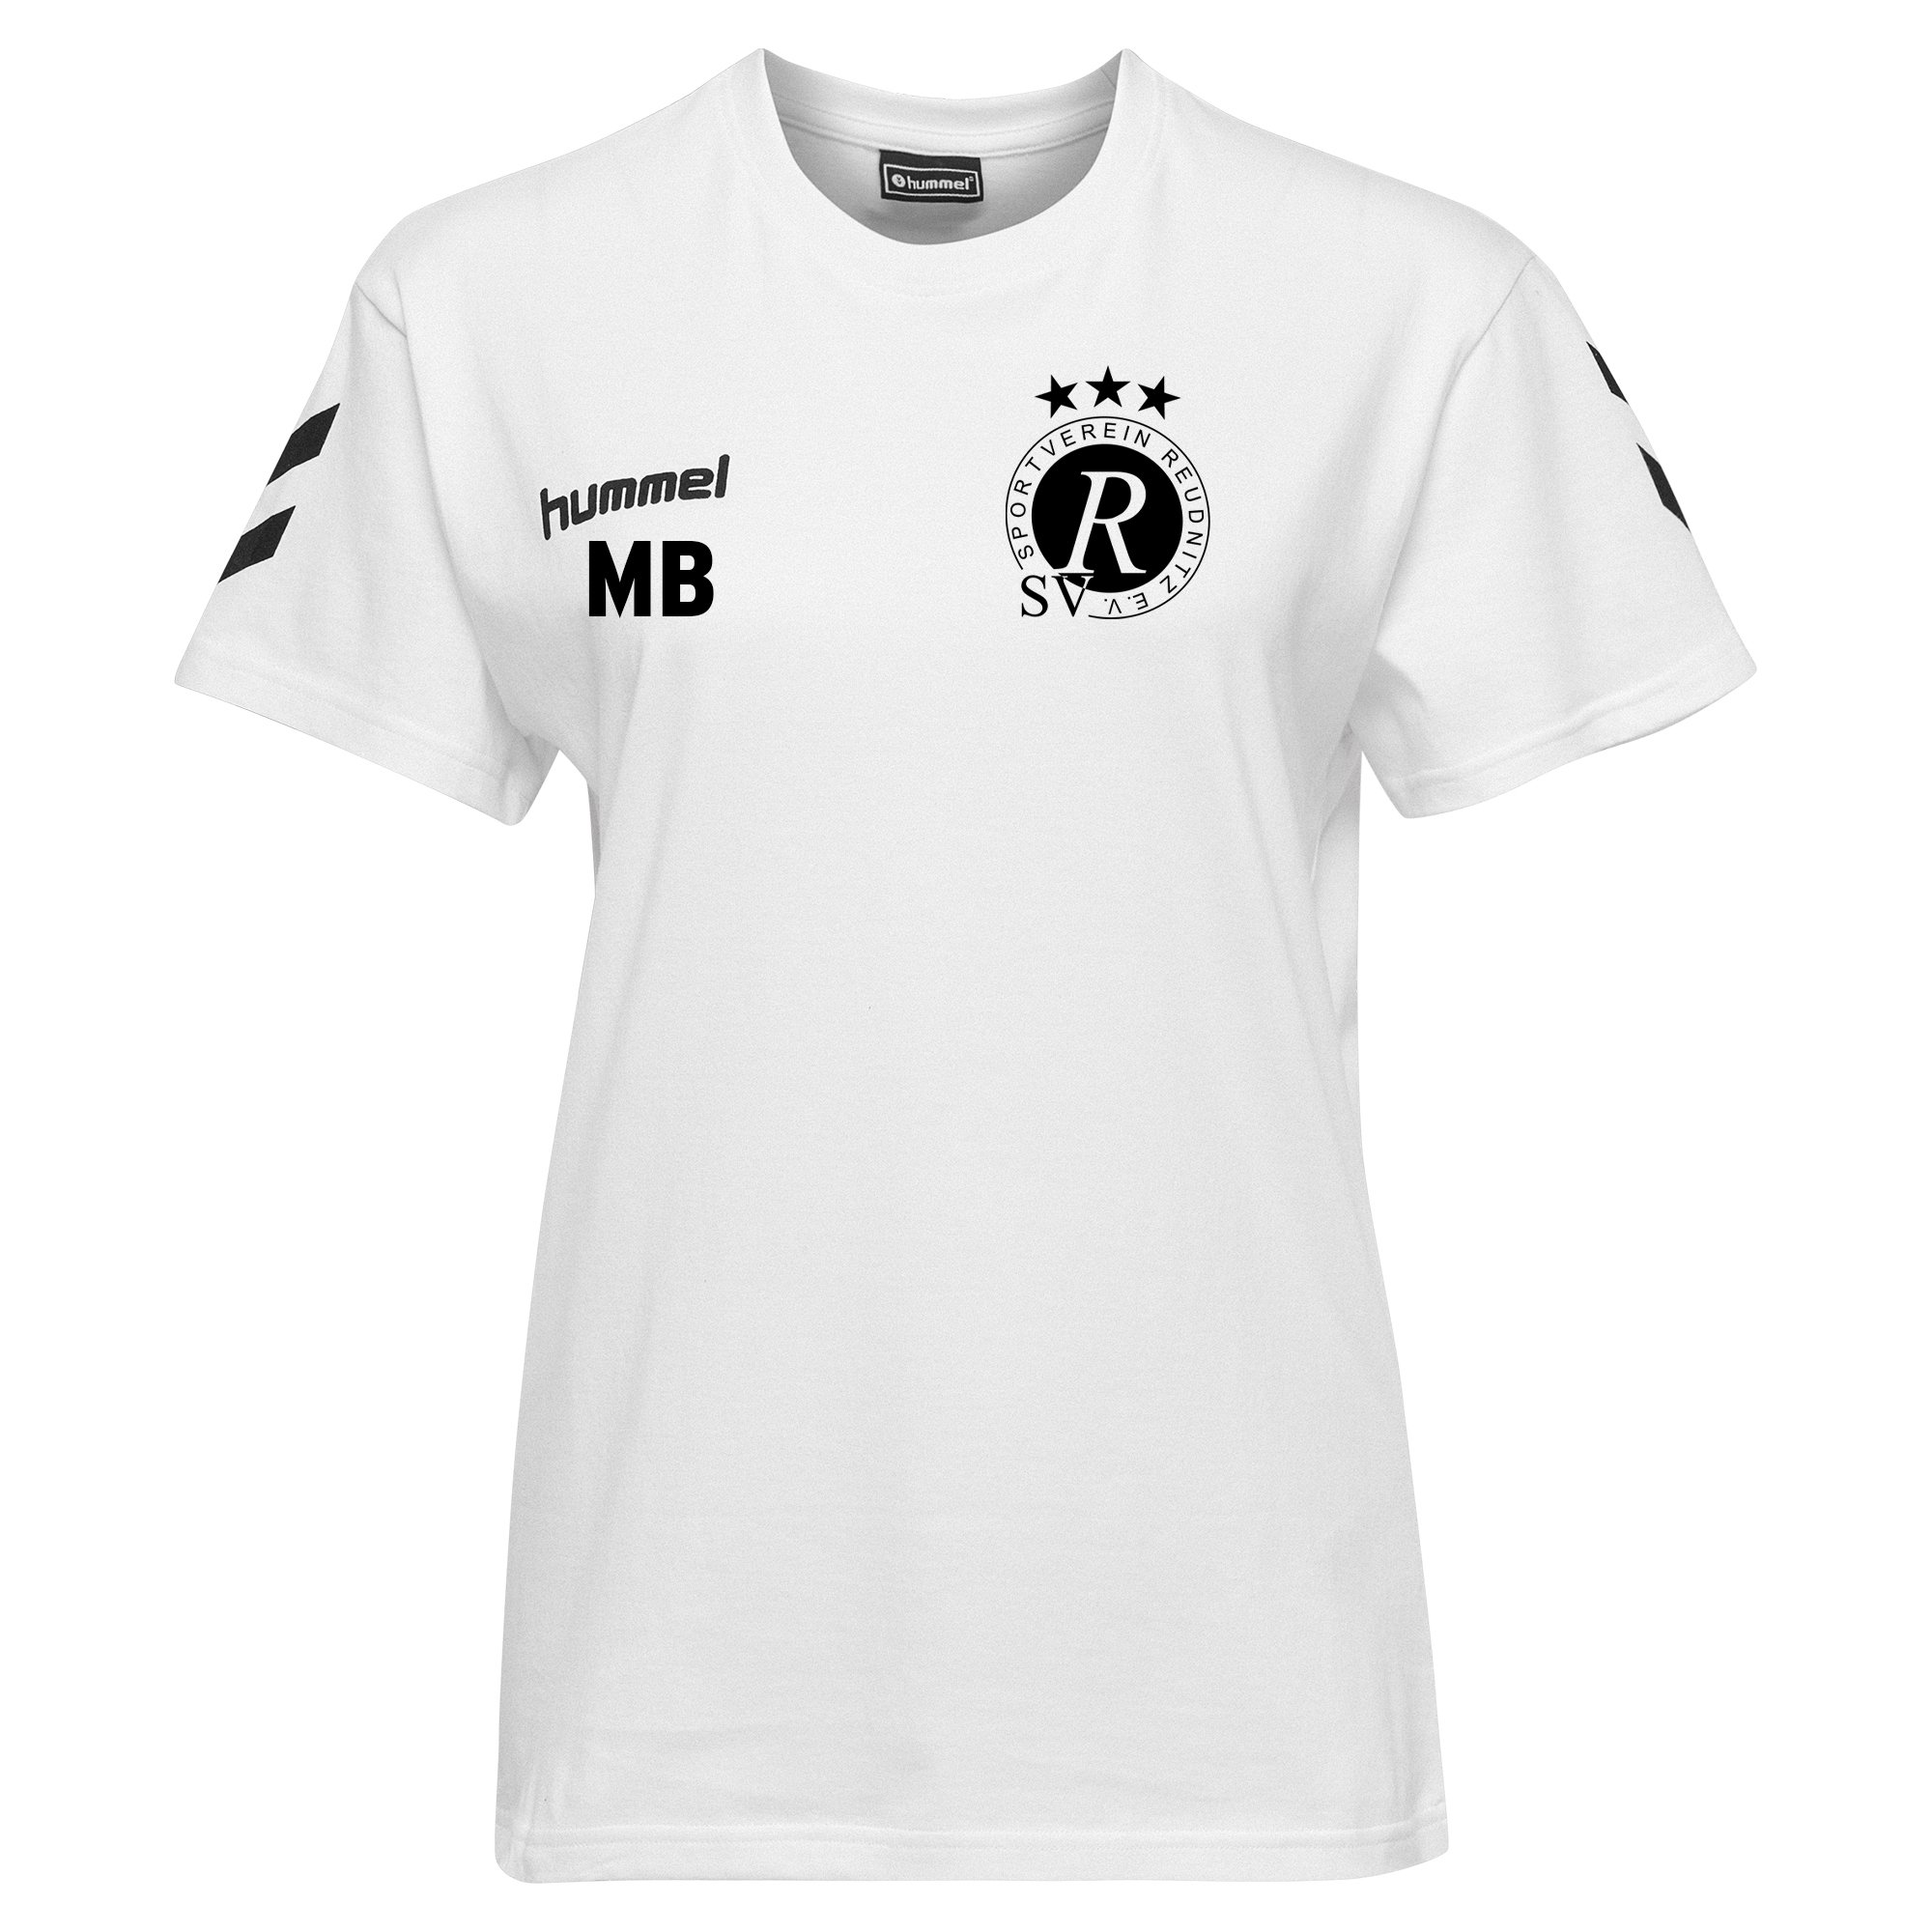 SV Reudnitz T-Shirt Damen